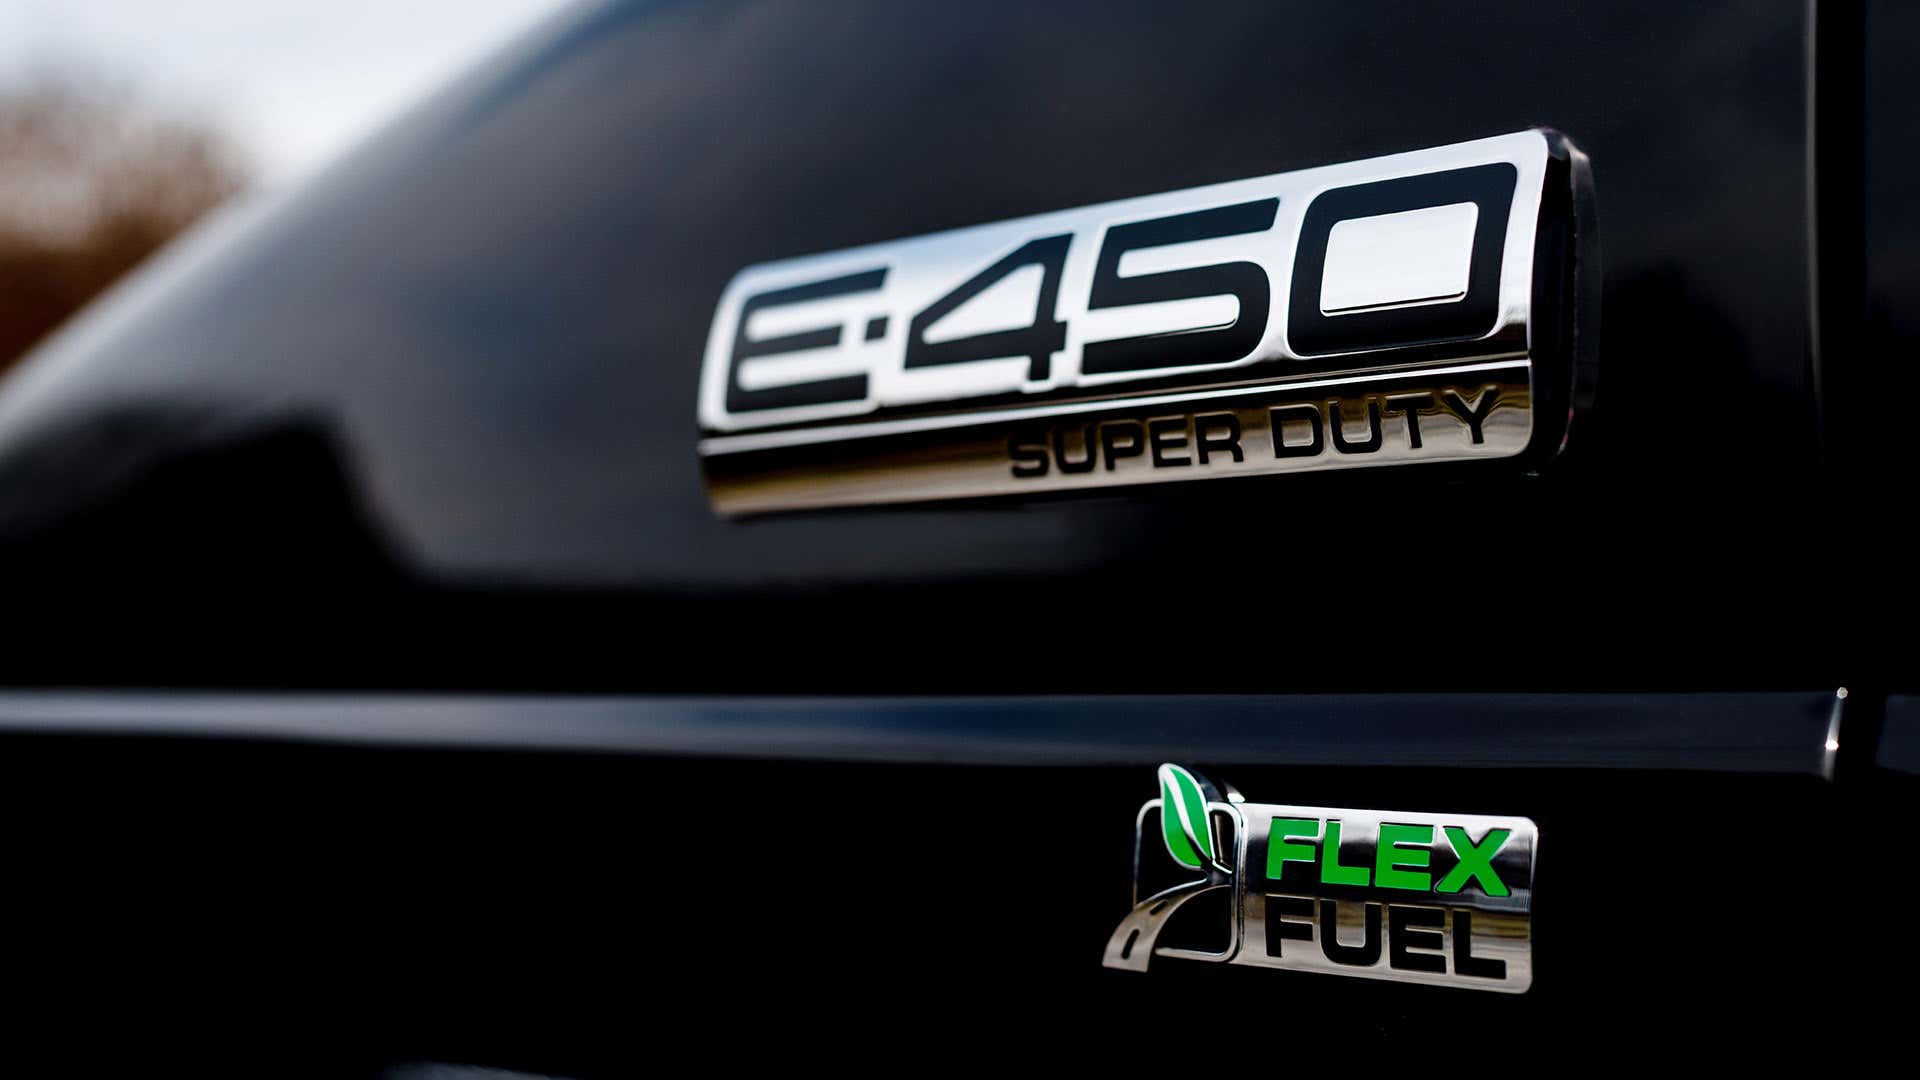 A Ford E-450 Super Duty Flex Fuel badge.